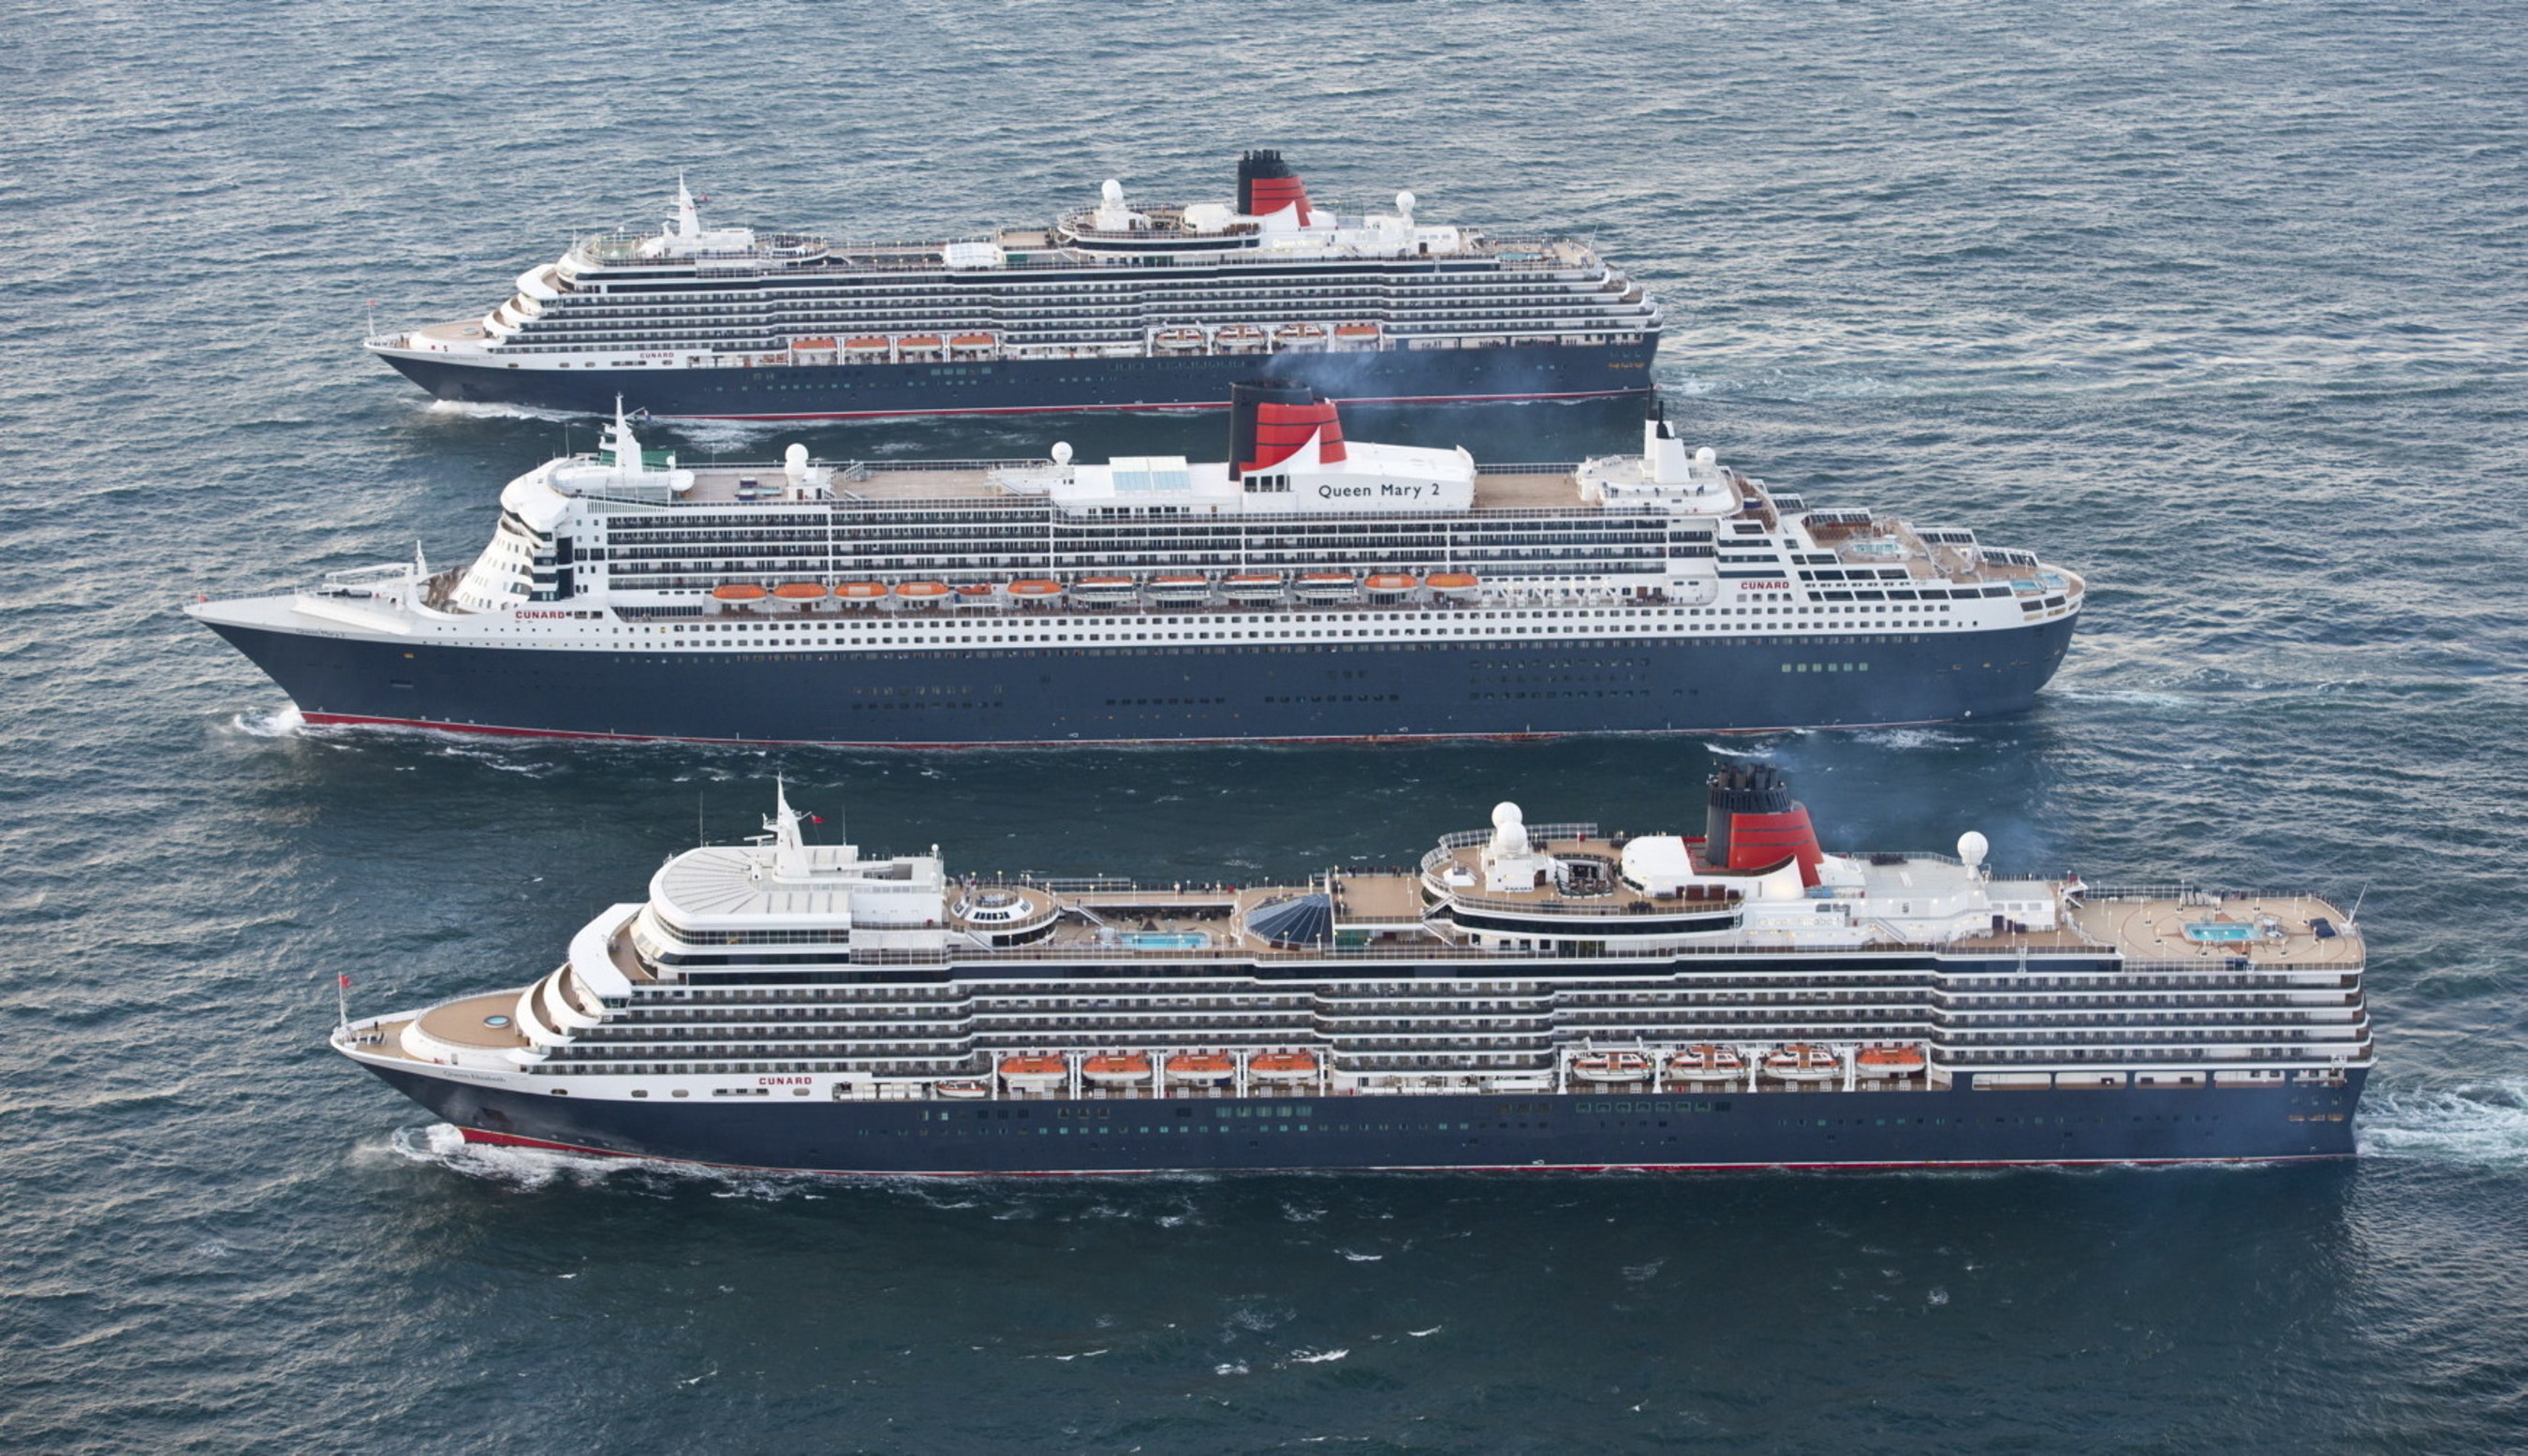 Cunard cruise ships